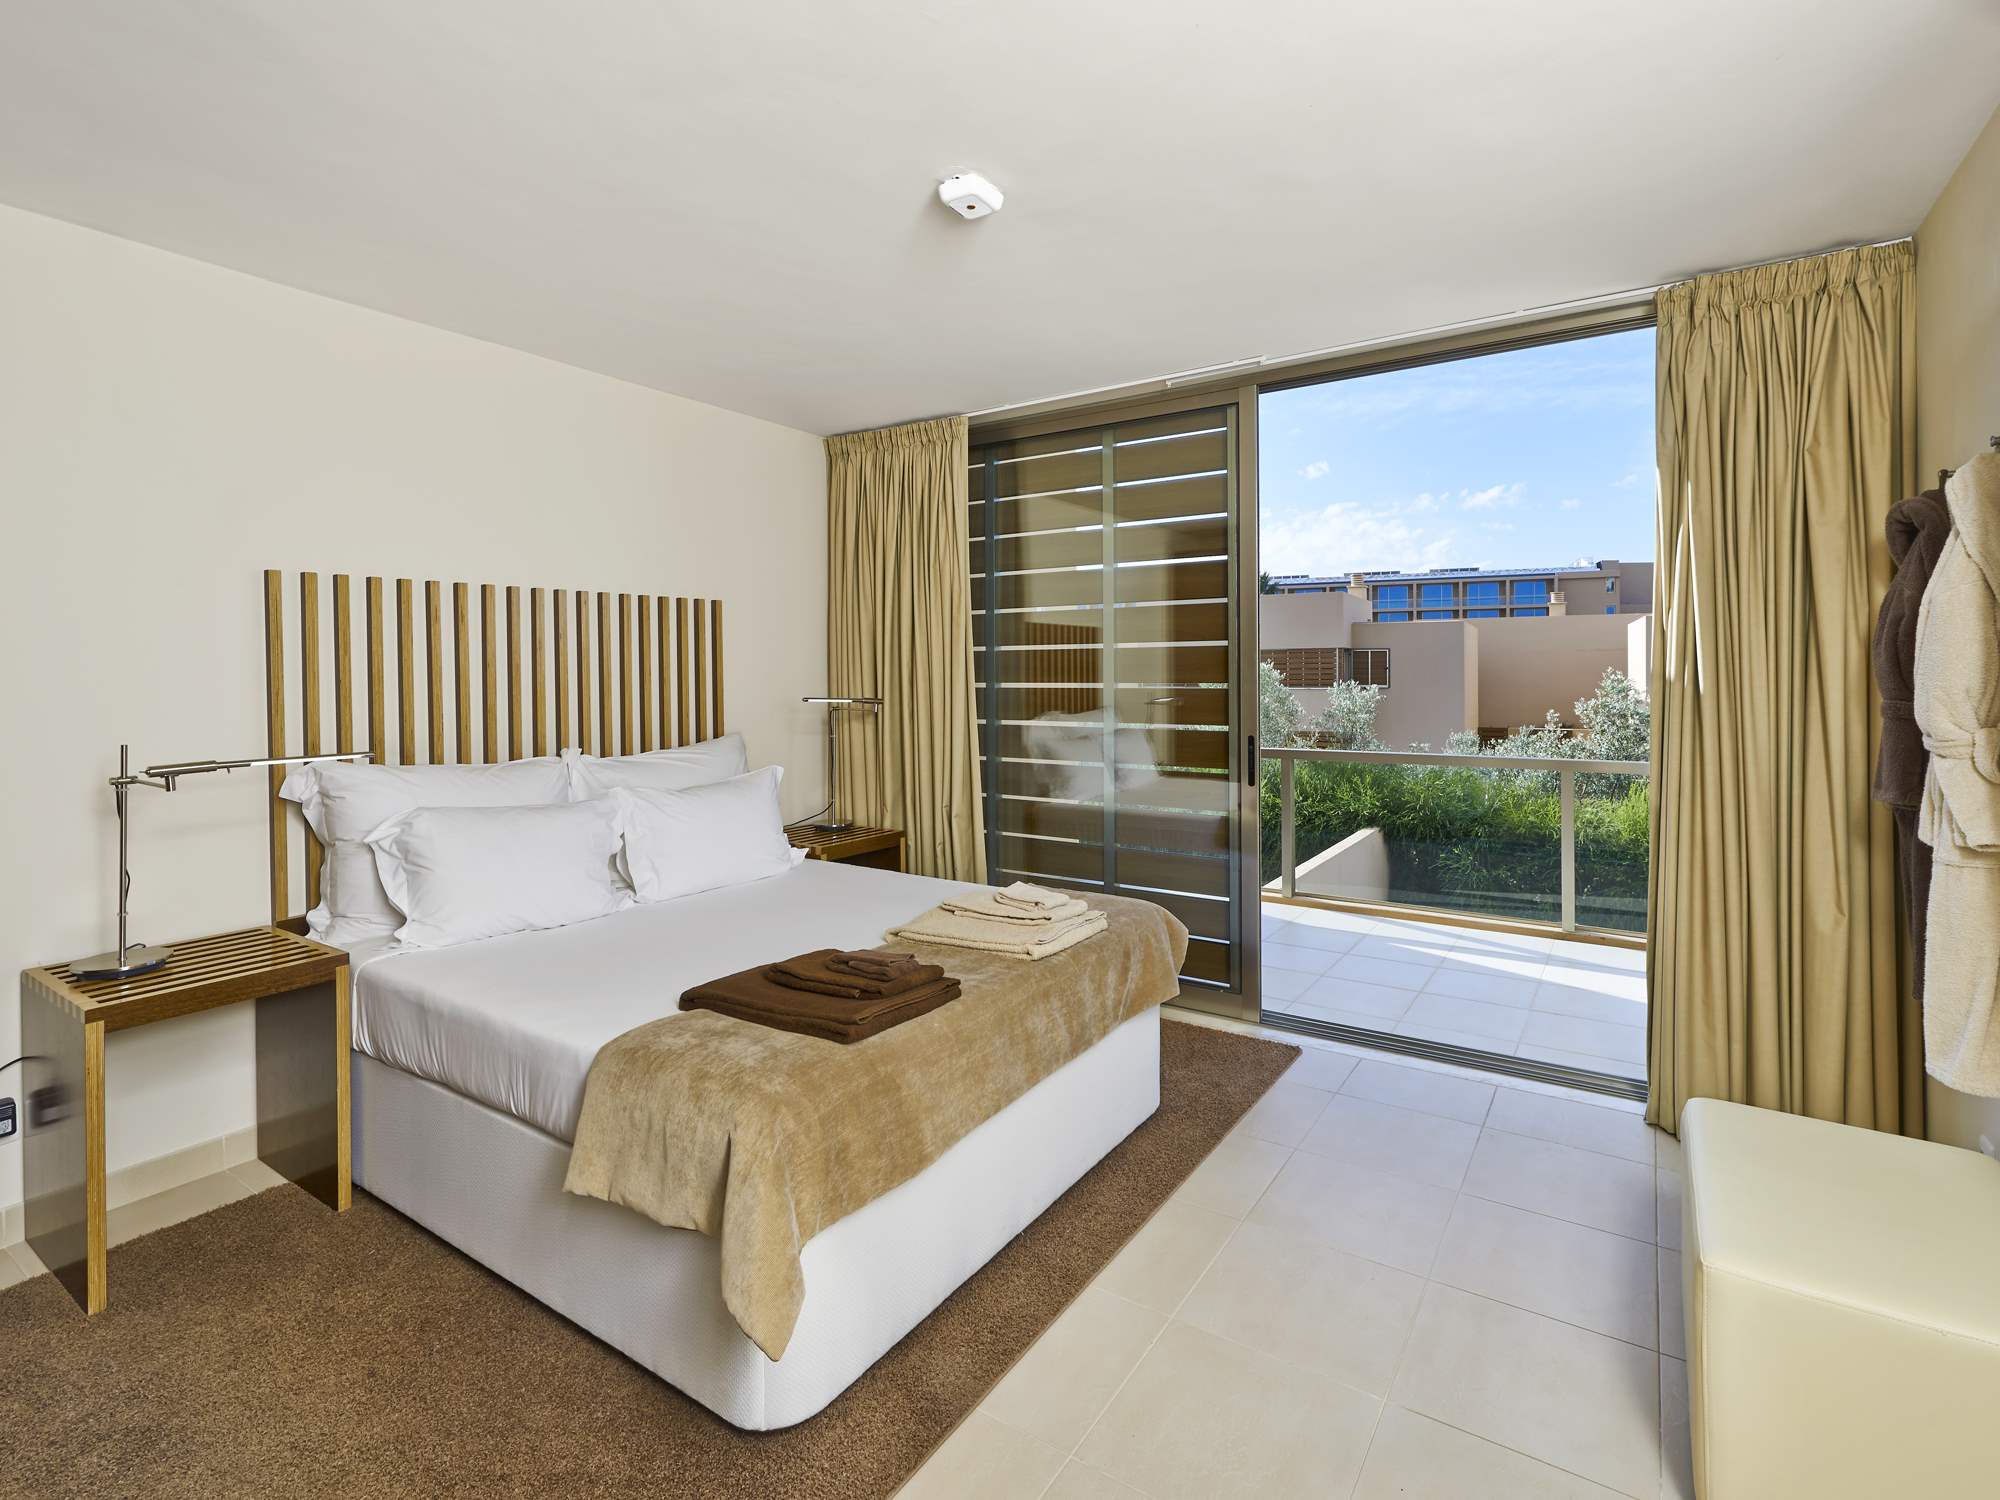 Salgados Beach Villas, 3 Bed, SC Basis, 3 bedroom villa in Gale, Vale da Parra and Guia, Algarve Photo #8